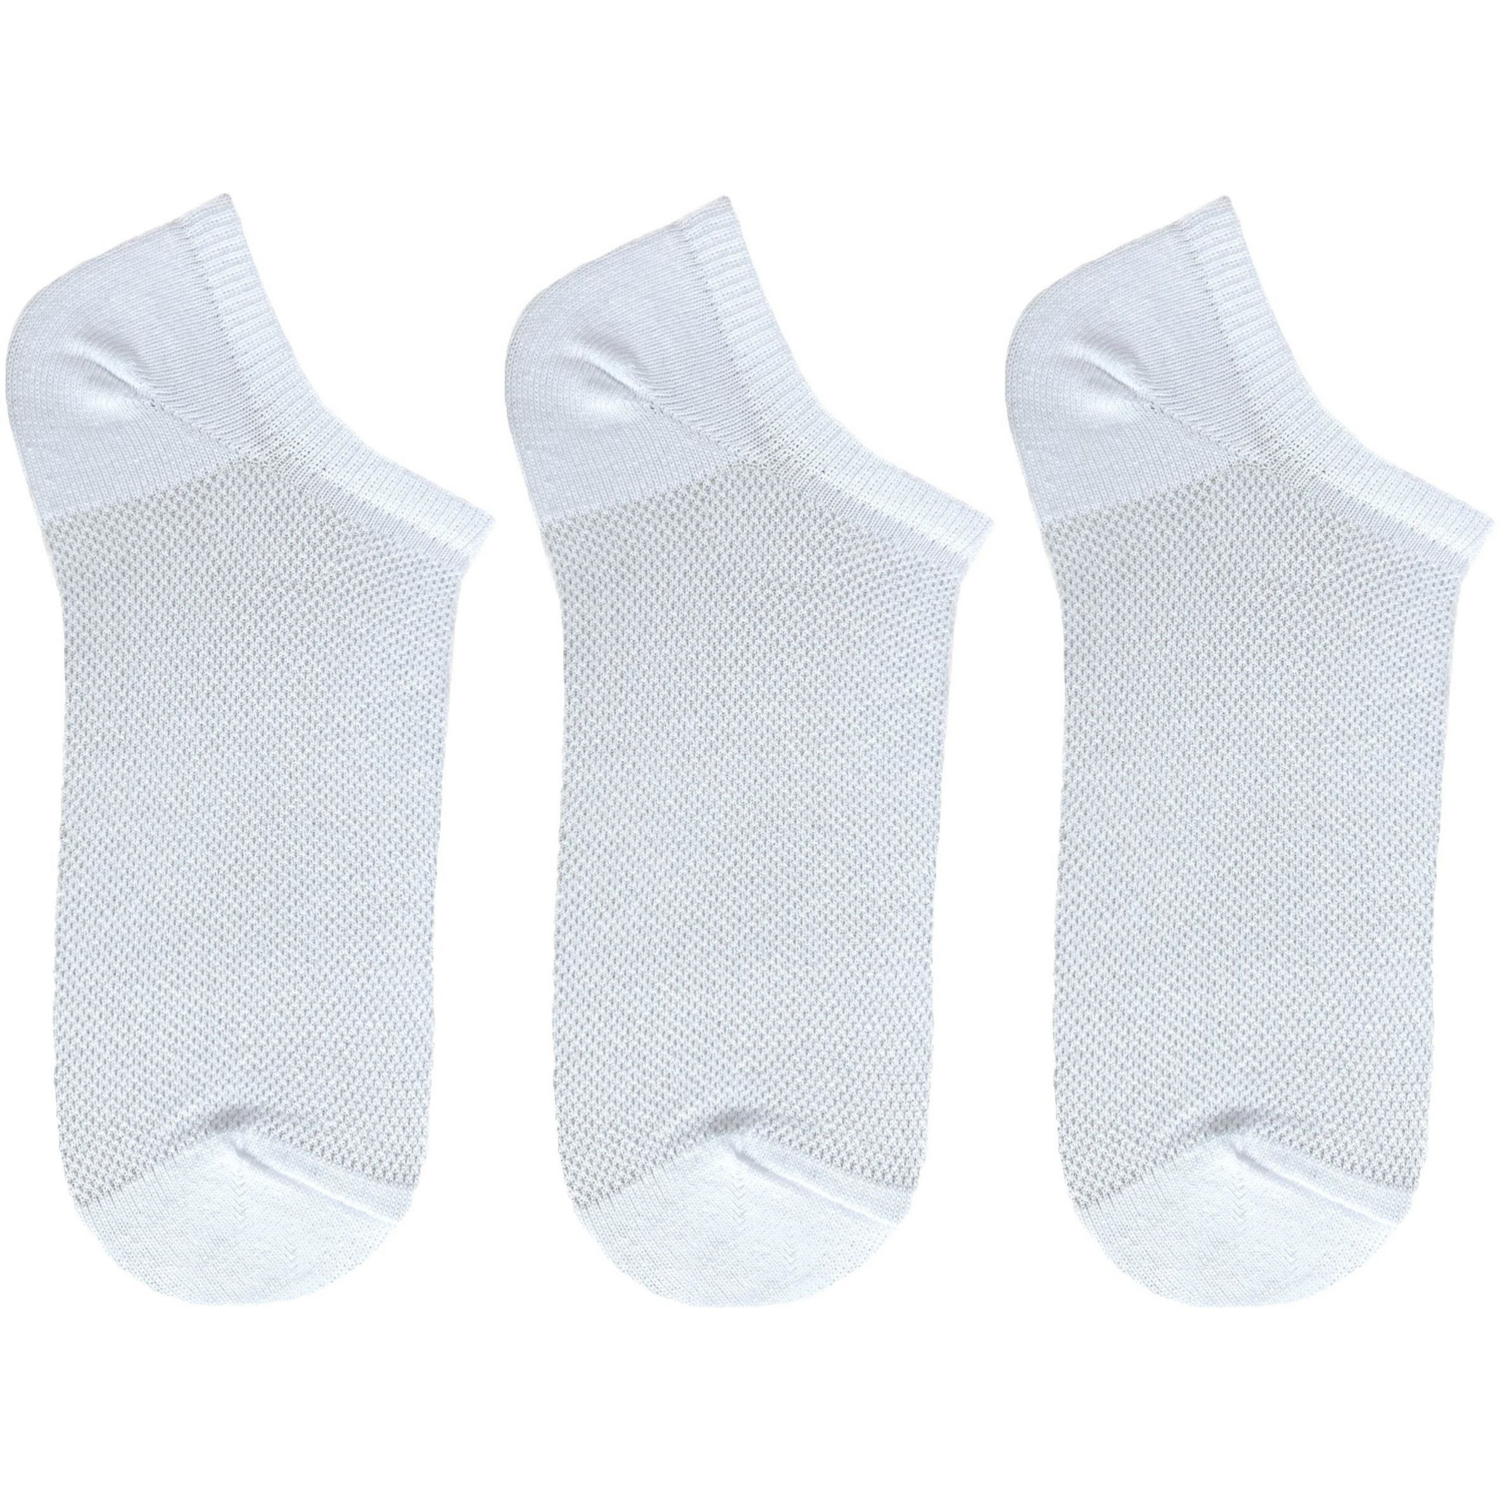 Набір шкарпеток жіночі Premier Socks 36-40 3 пари білі (4820163319391)фото